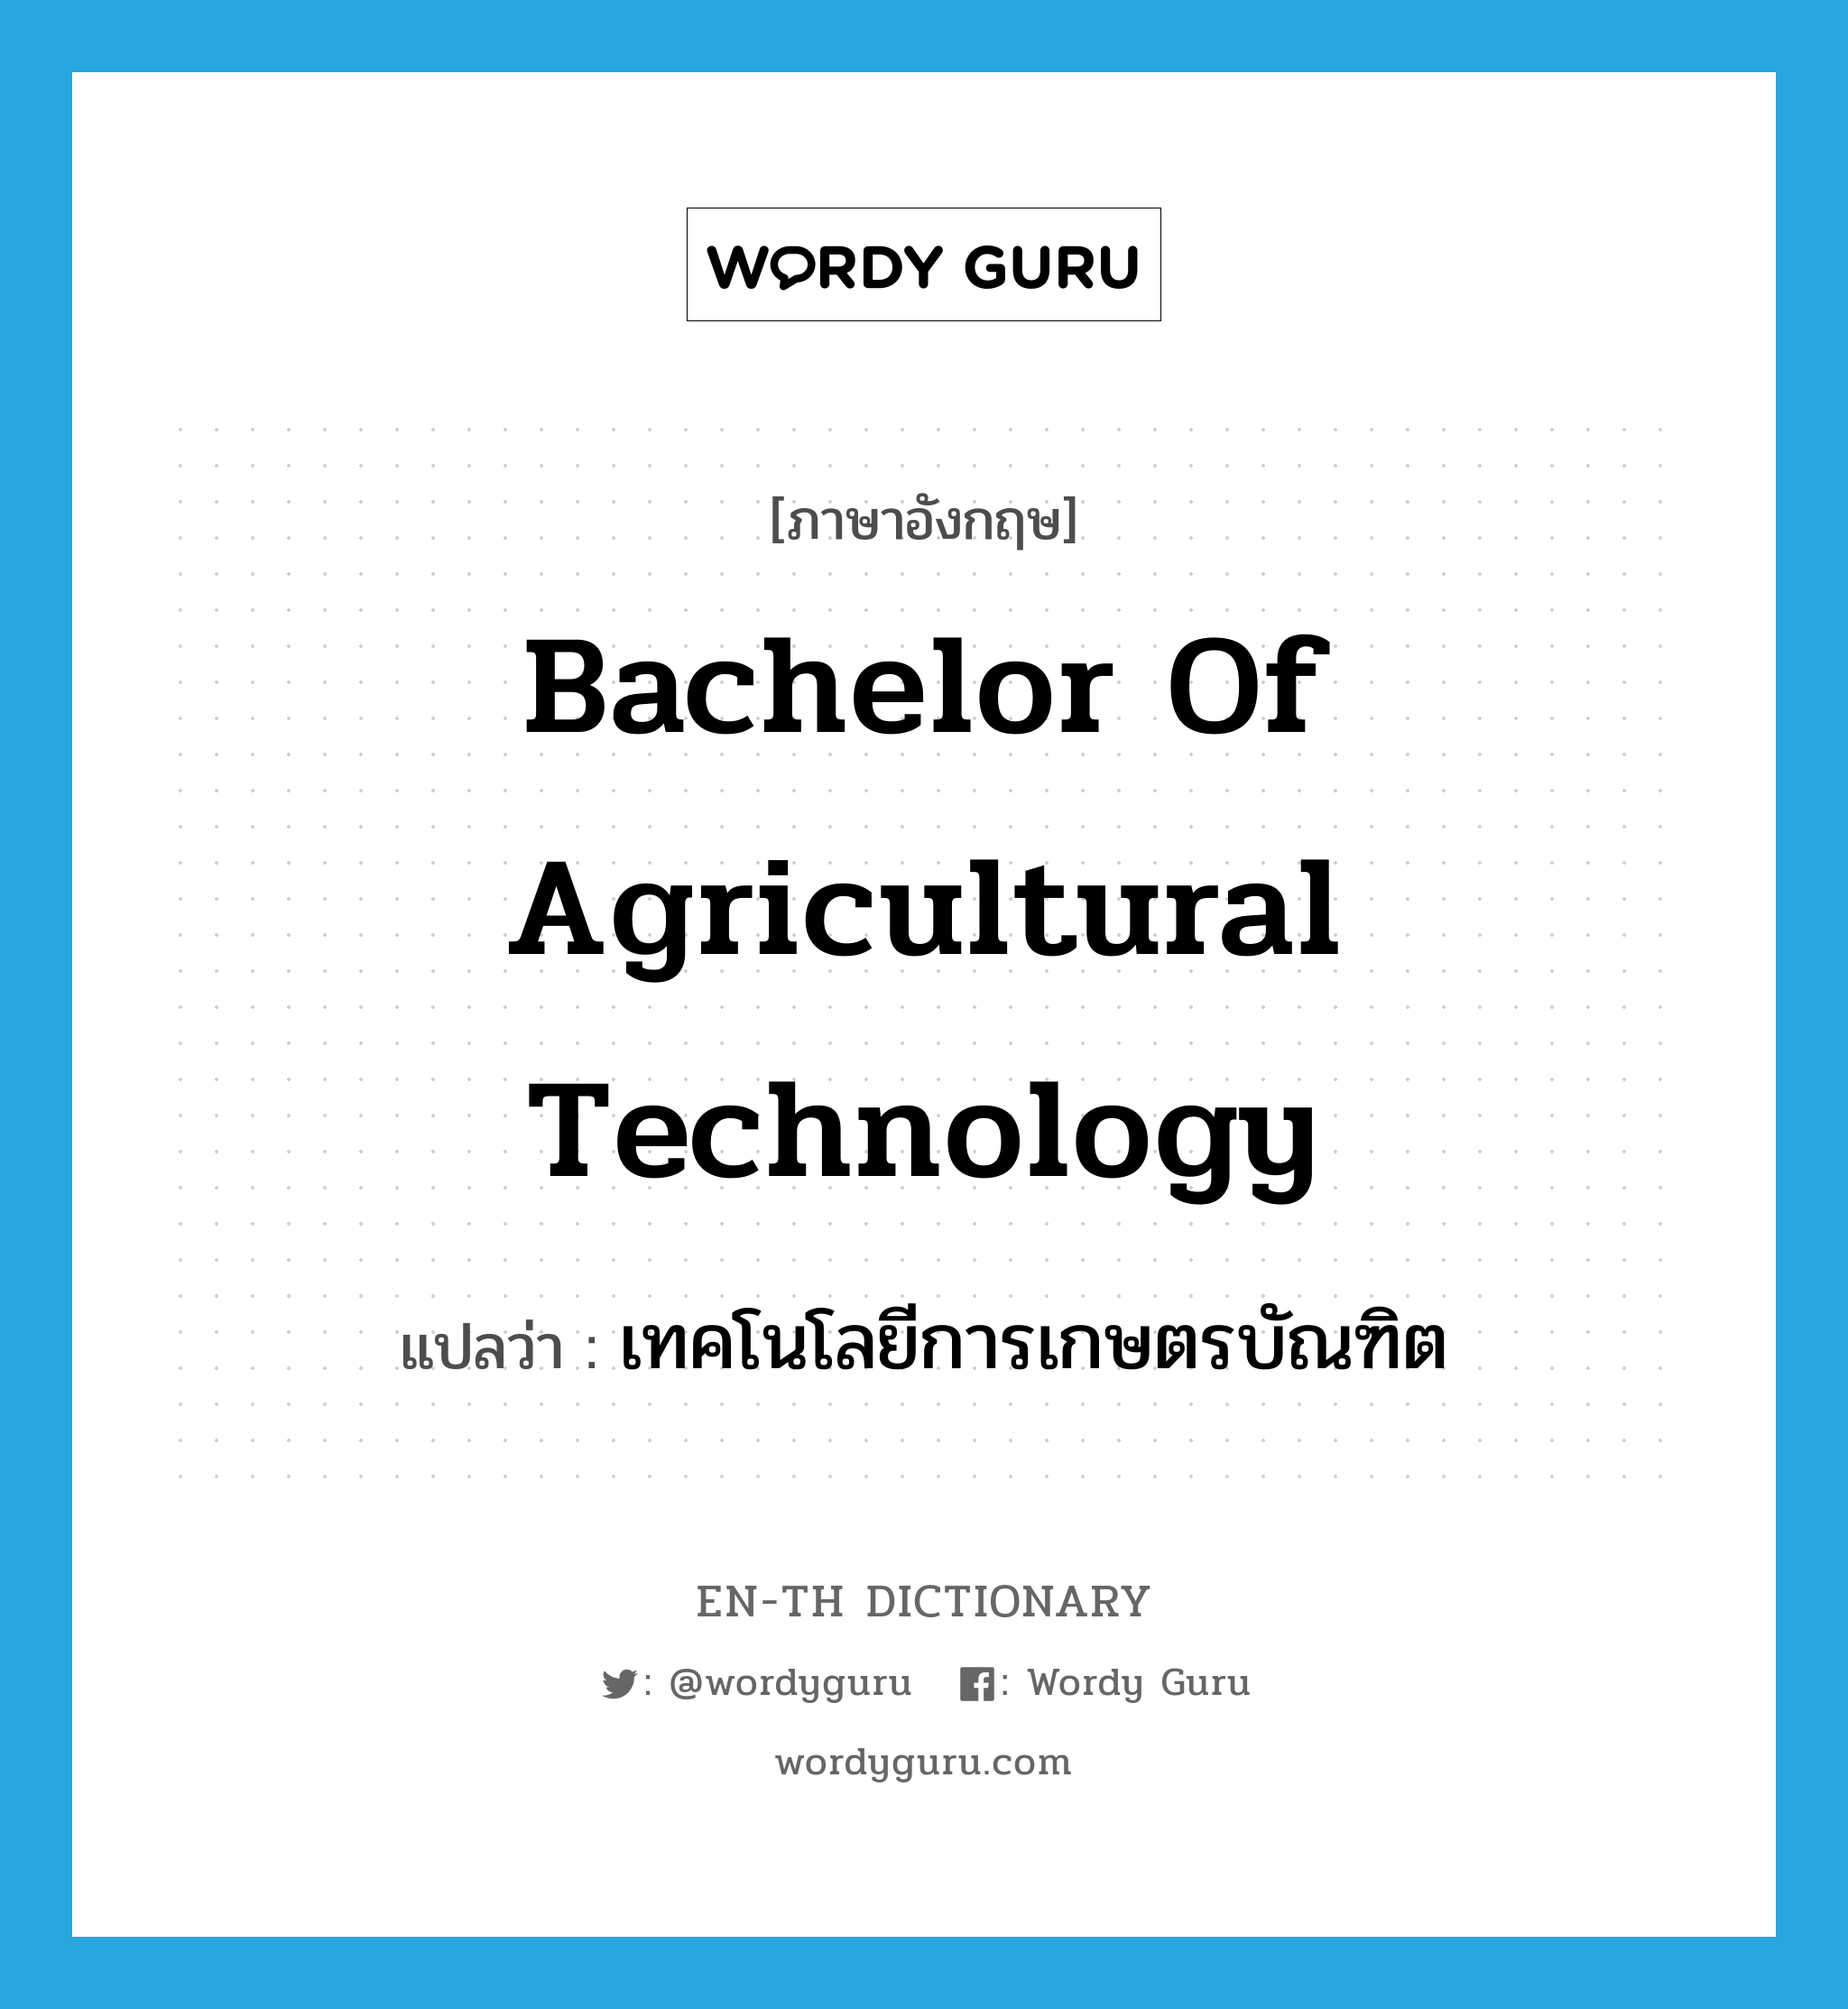 เทคโนโลยีการเกษตรบัณฑิต ภาษาอังกฤษ?, คำศัพท์ภาษาอังกฤษ เทคโนโลยีการเกษตรบัณฑิต แปลว่า Bachelor of Agricultural Technology ประเภท N หมวด N